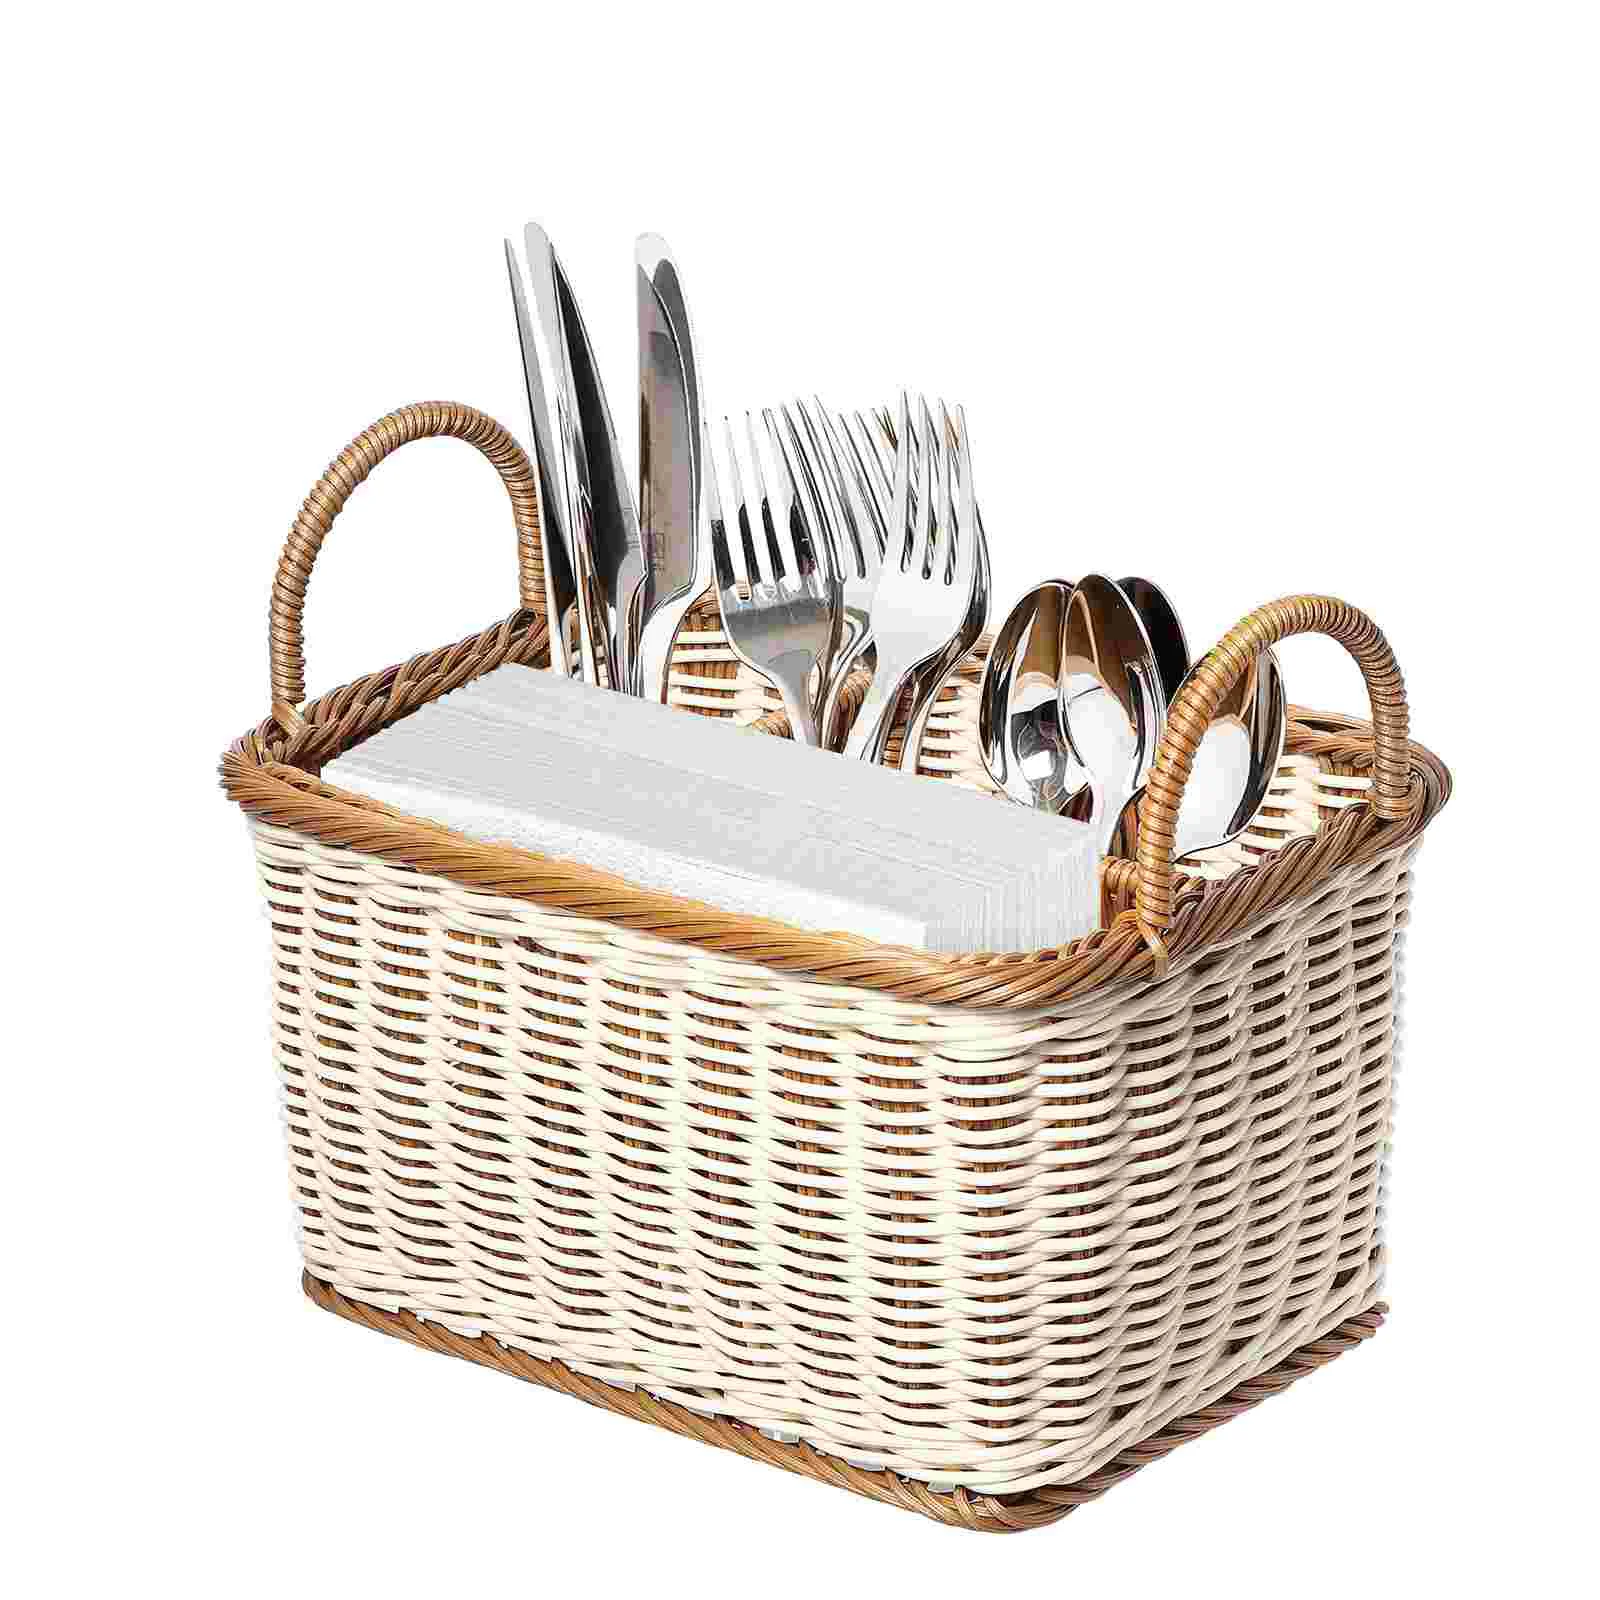 

Basket Storage Utensil Baskets Silverware Holder Organizer Woven Picnic Wicker Kitchen Organizing Cutlery Outdoor Rattan